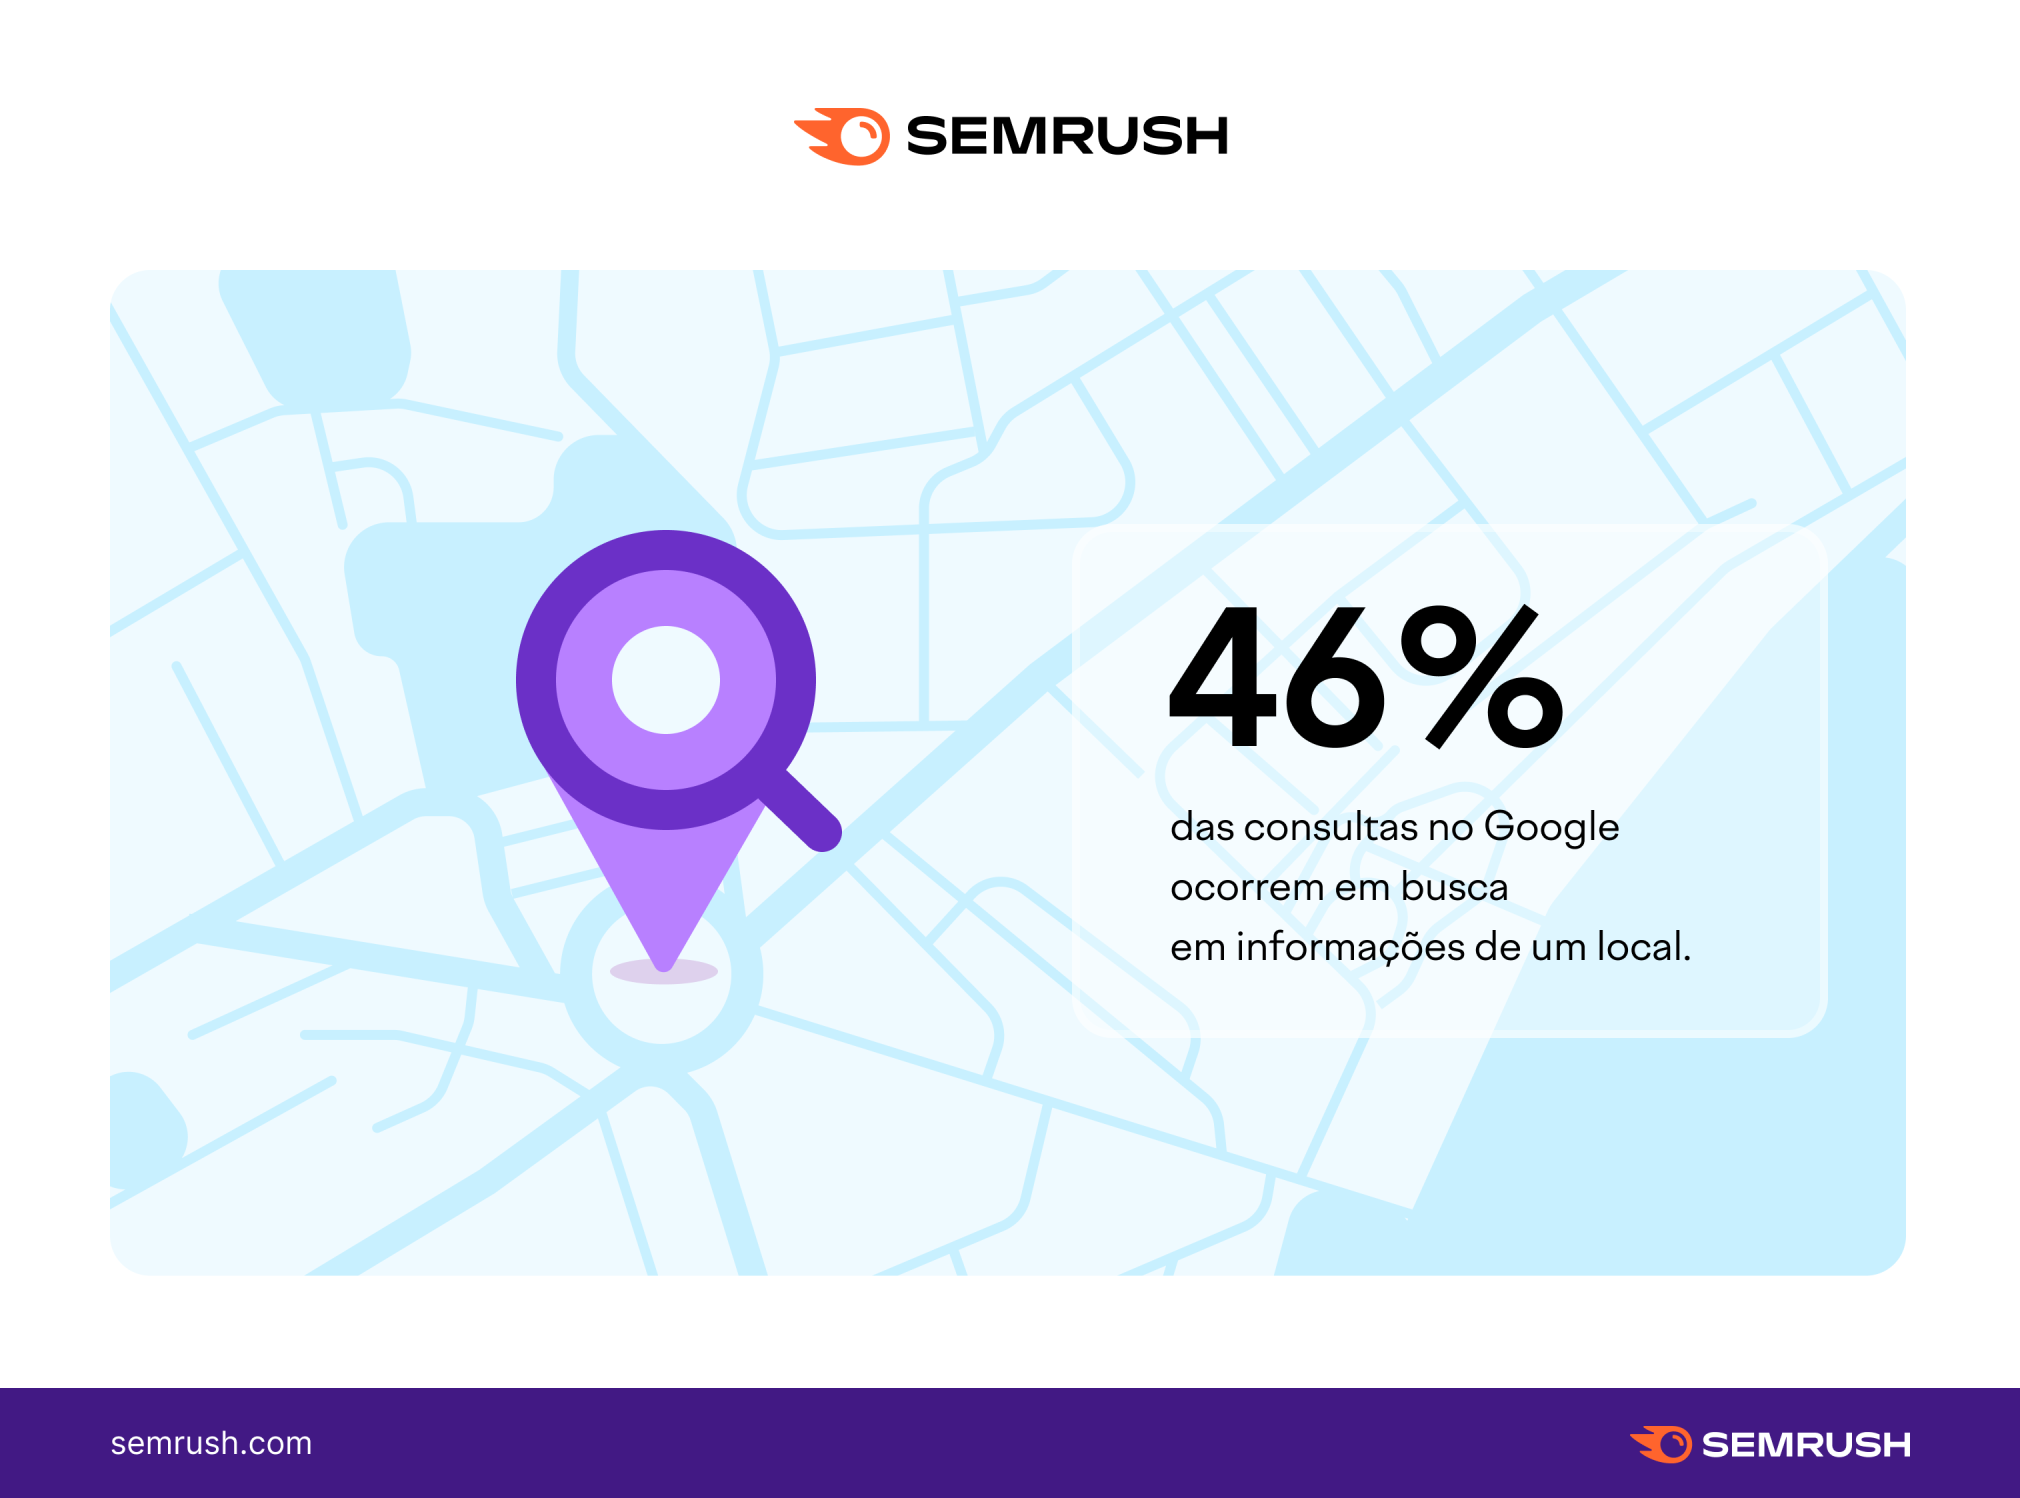 46% das pesquisas feitas no Google são relacionadas a informações locais